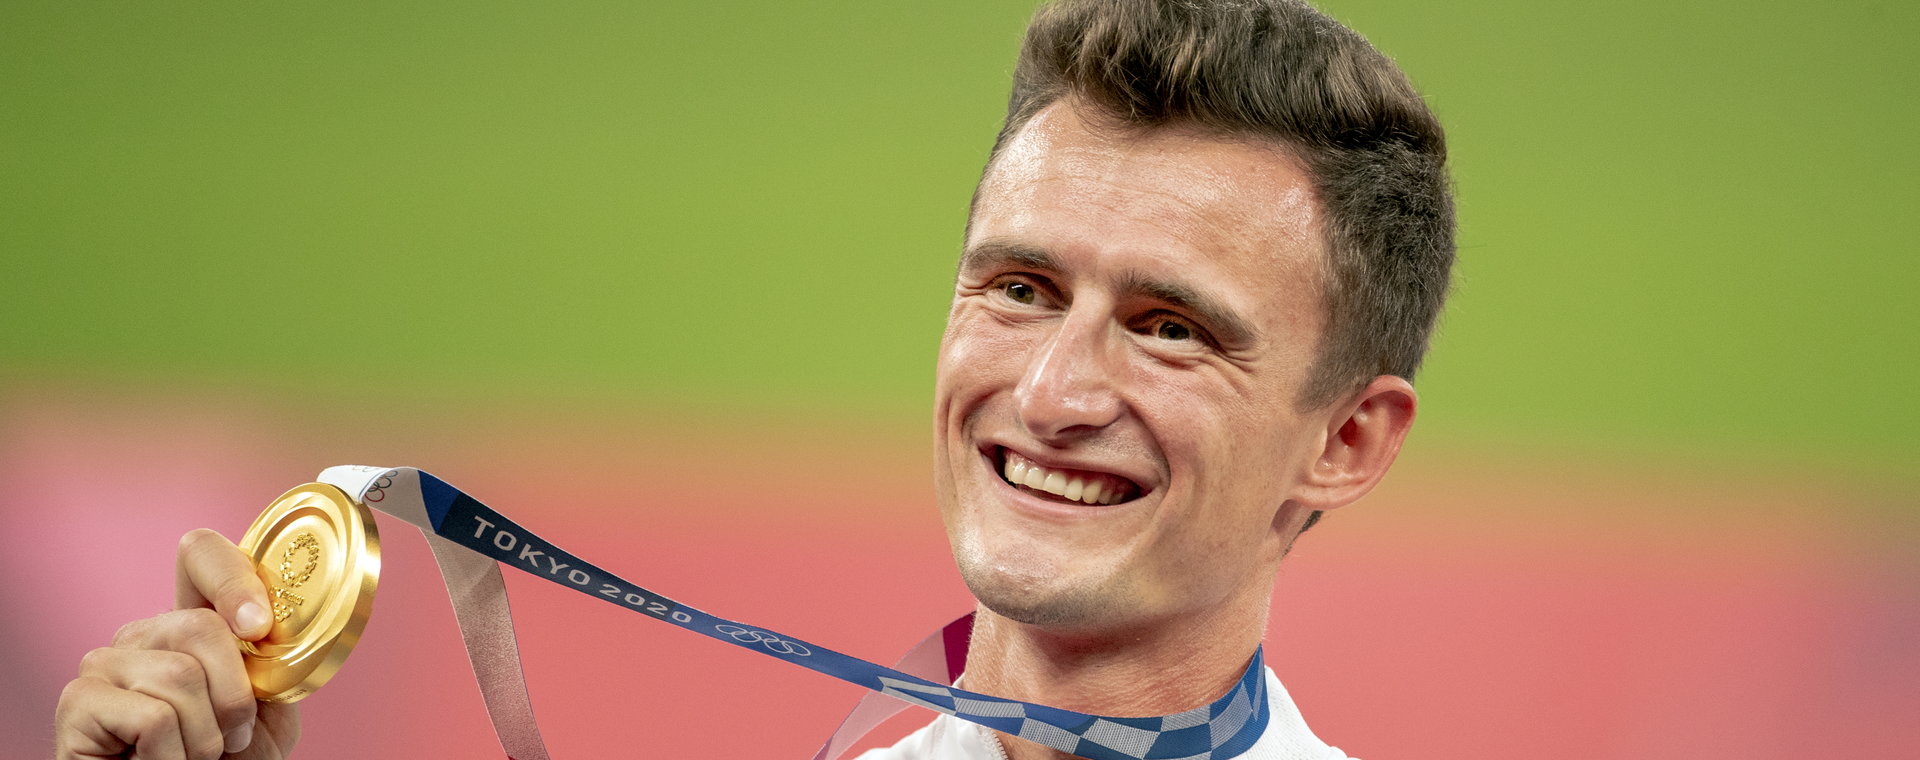 Dawid Tomala zdobył złoty medal w chodzie na 50 km podczas letnich Igrzysk Olimpijskich w Tokio w 2021 r.